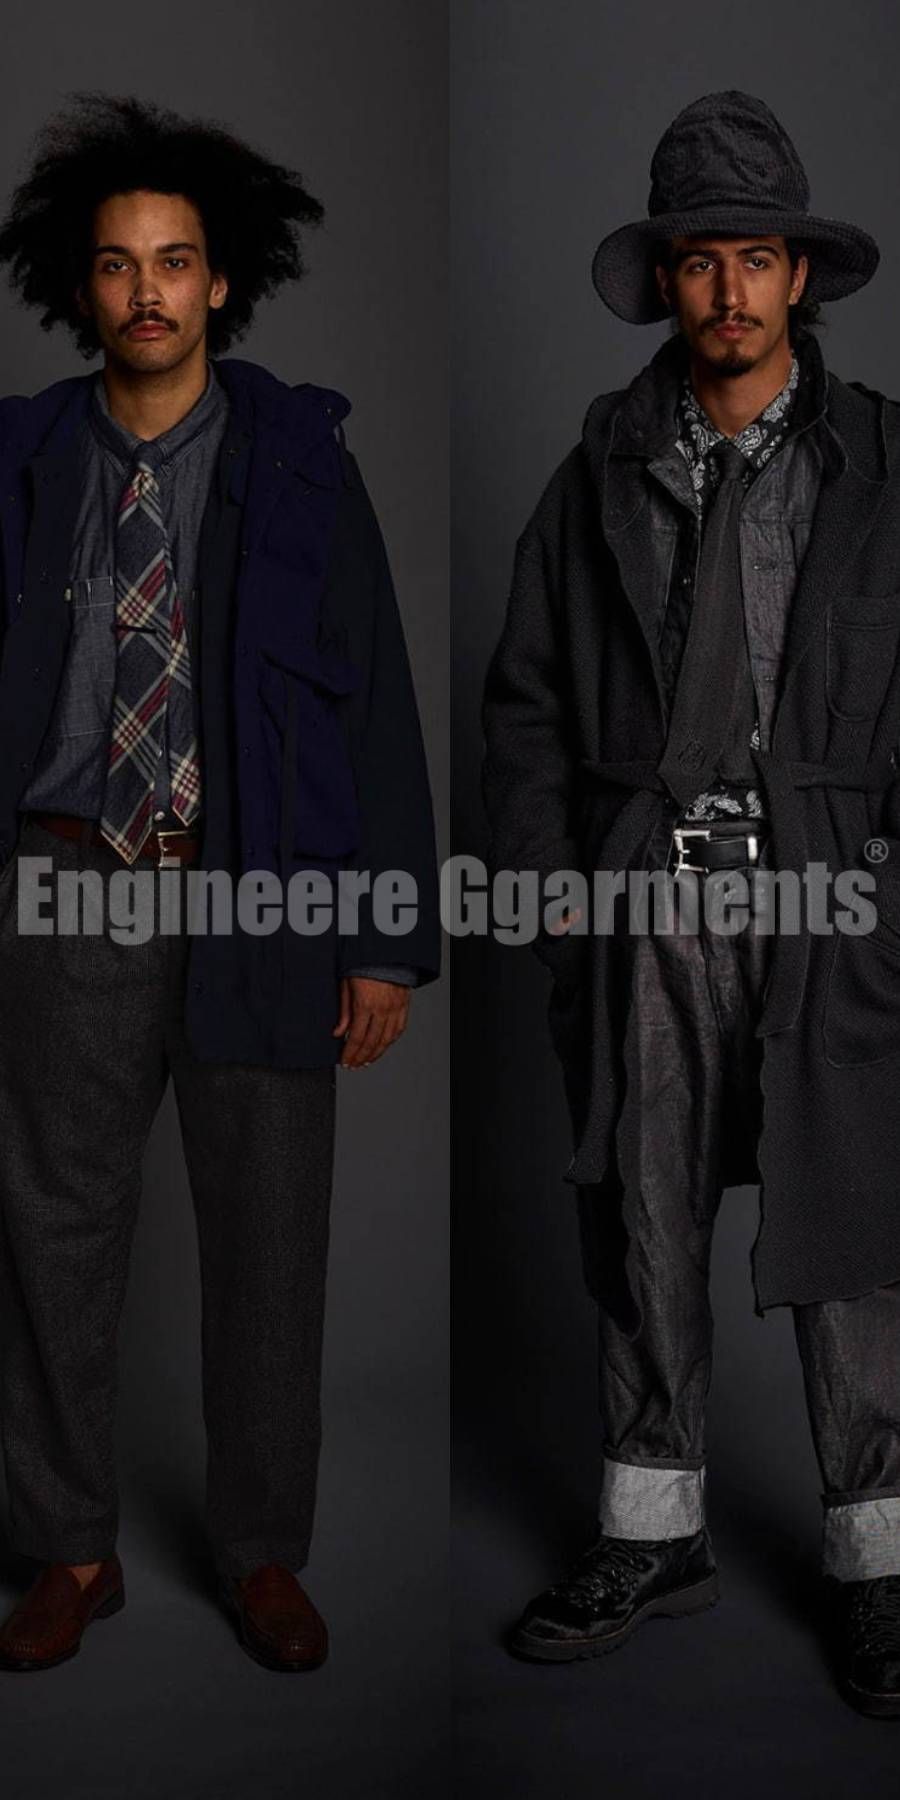 Engineered Garments(エンジニアードガーメンツ)買取専門店